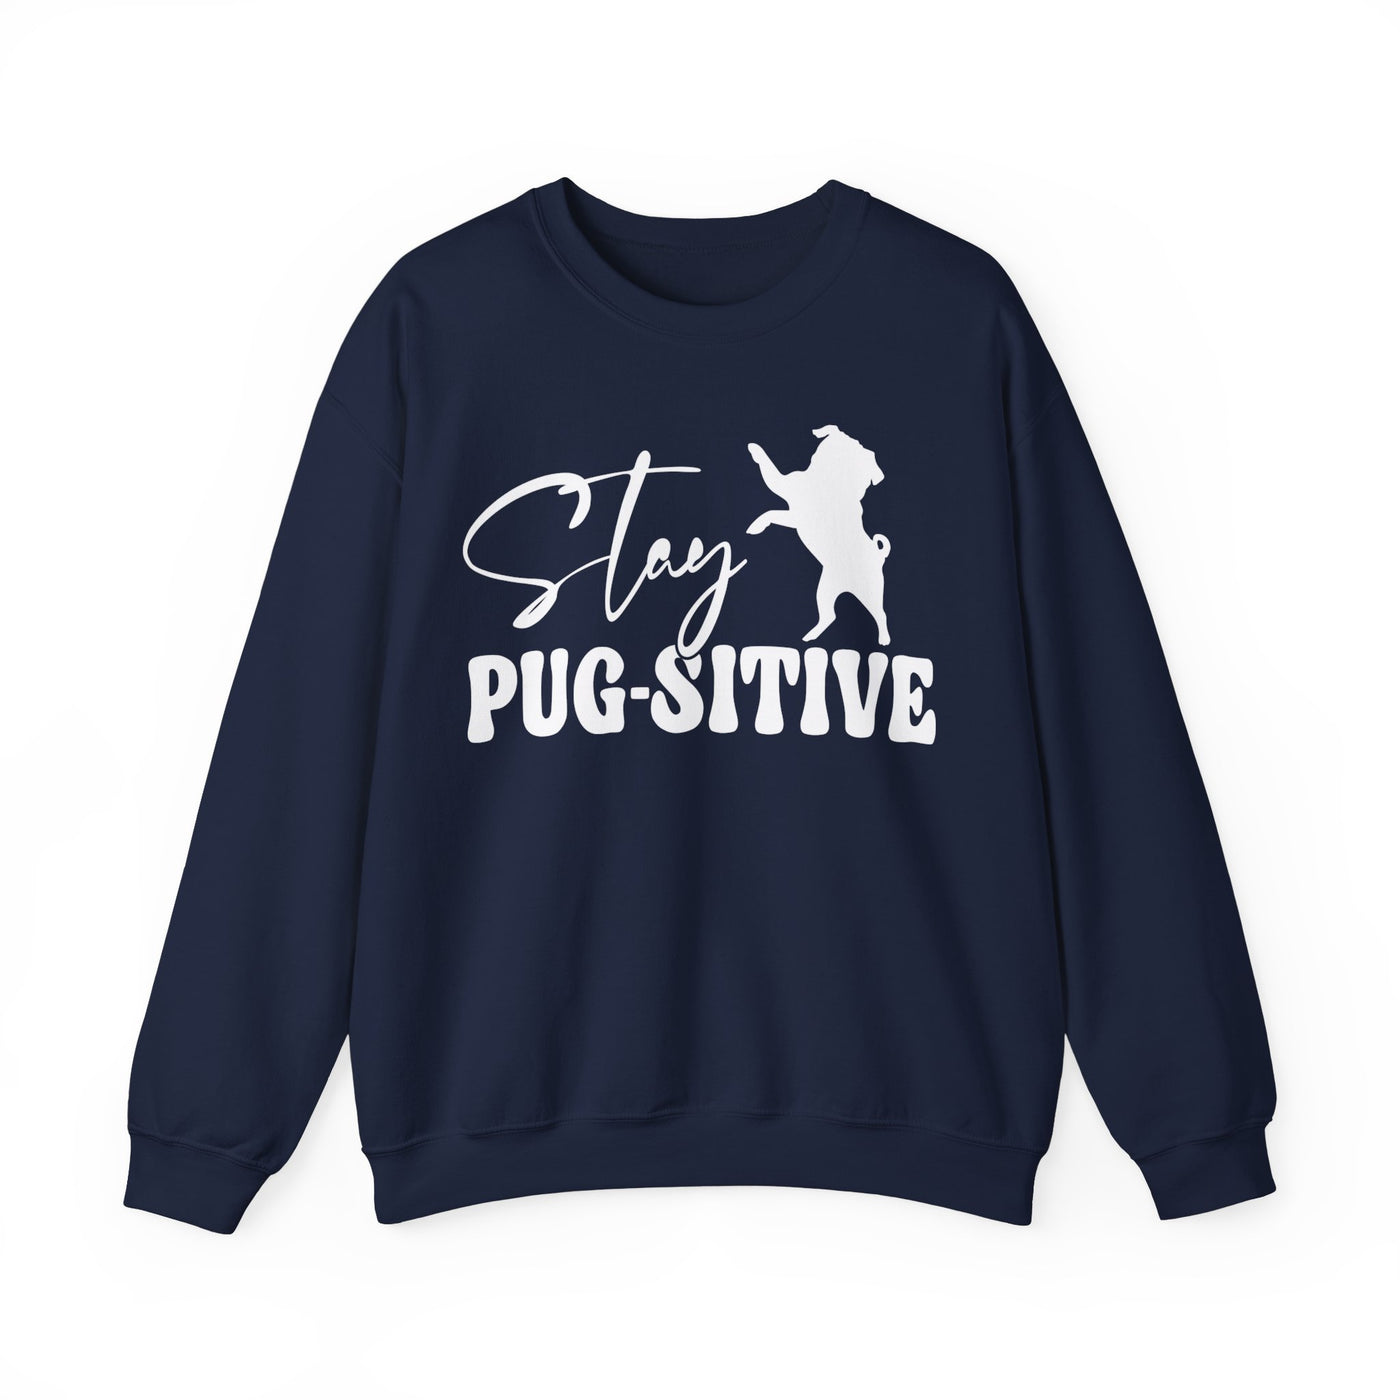 Stay Pugsitive Sweatshirt